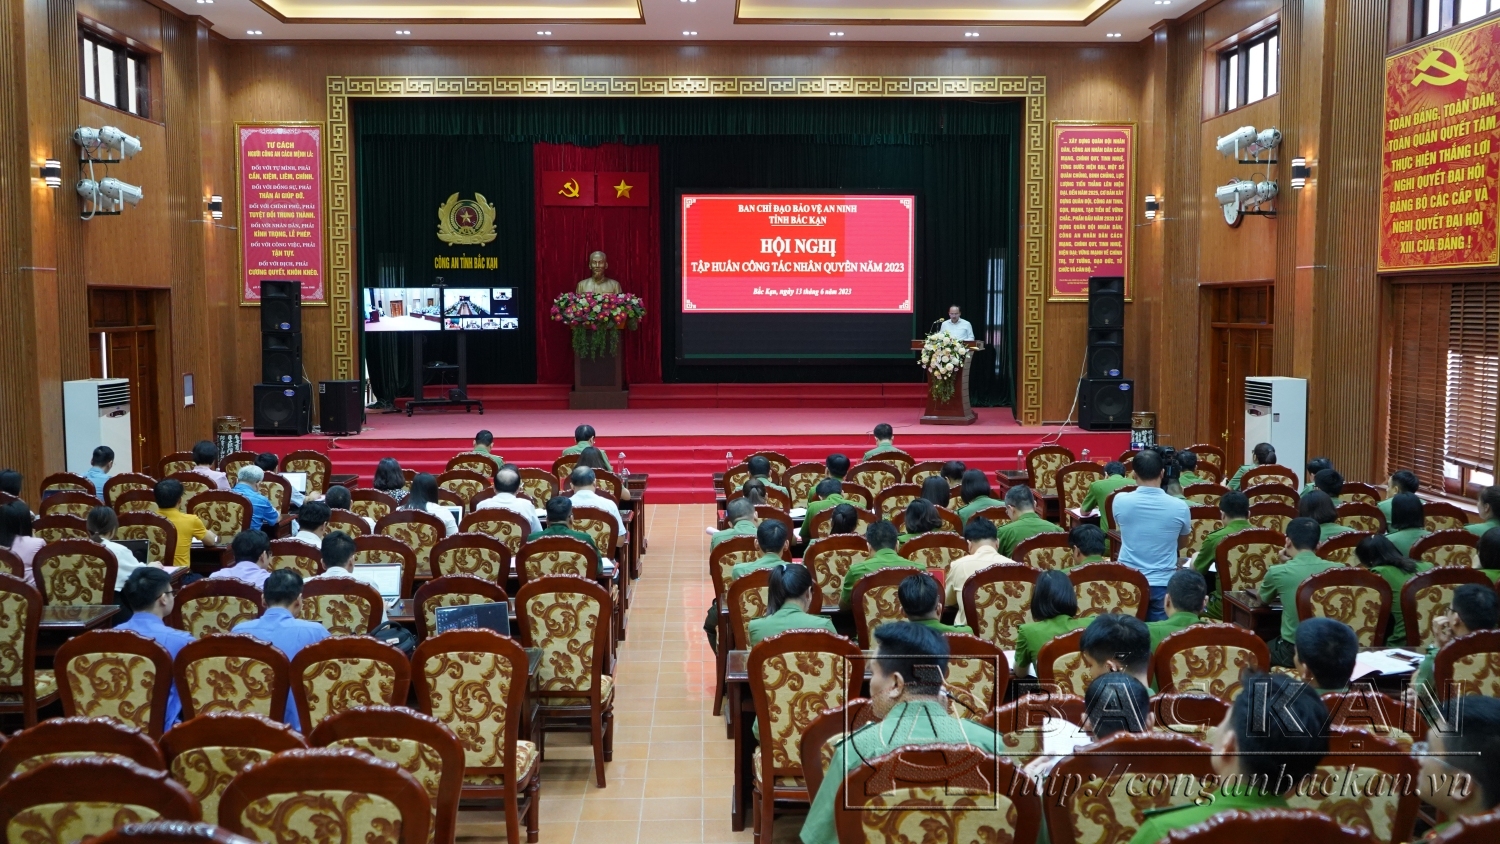 Đồng chí Nguyễn Đăng Bình - Chủ tịch UBND tỉnh, Trưởng Ban Chỉ đạo Bảo vệ an ninh tỉnh phát biểu tại hội nghị